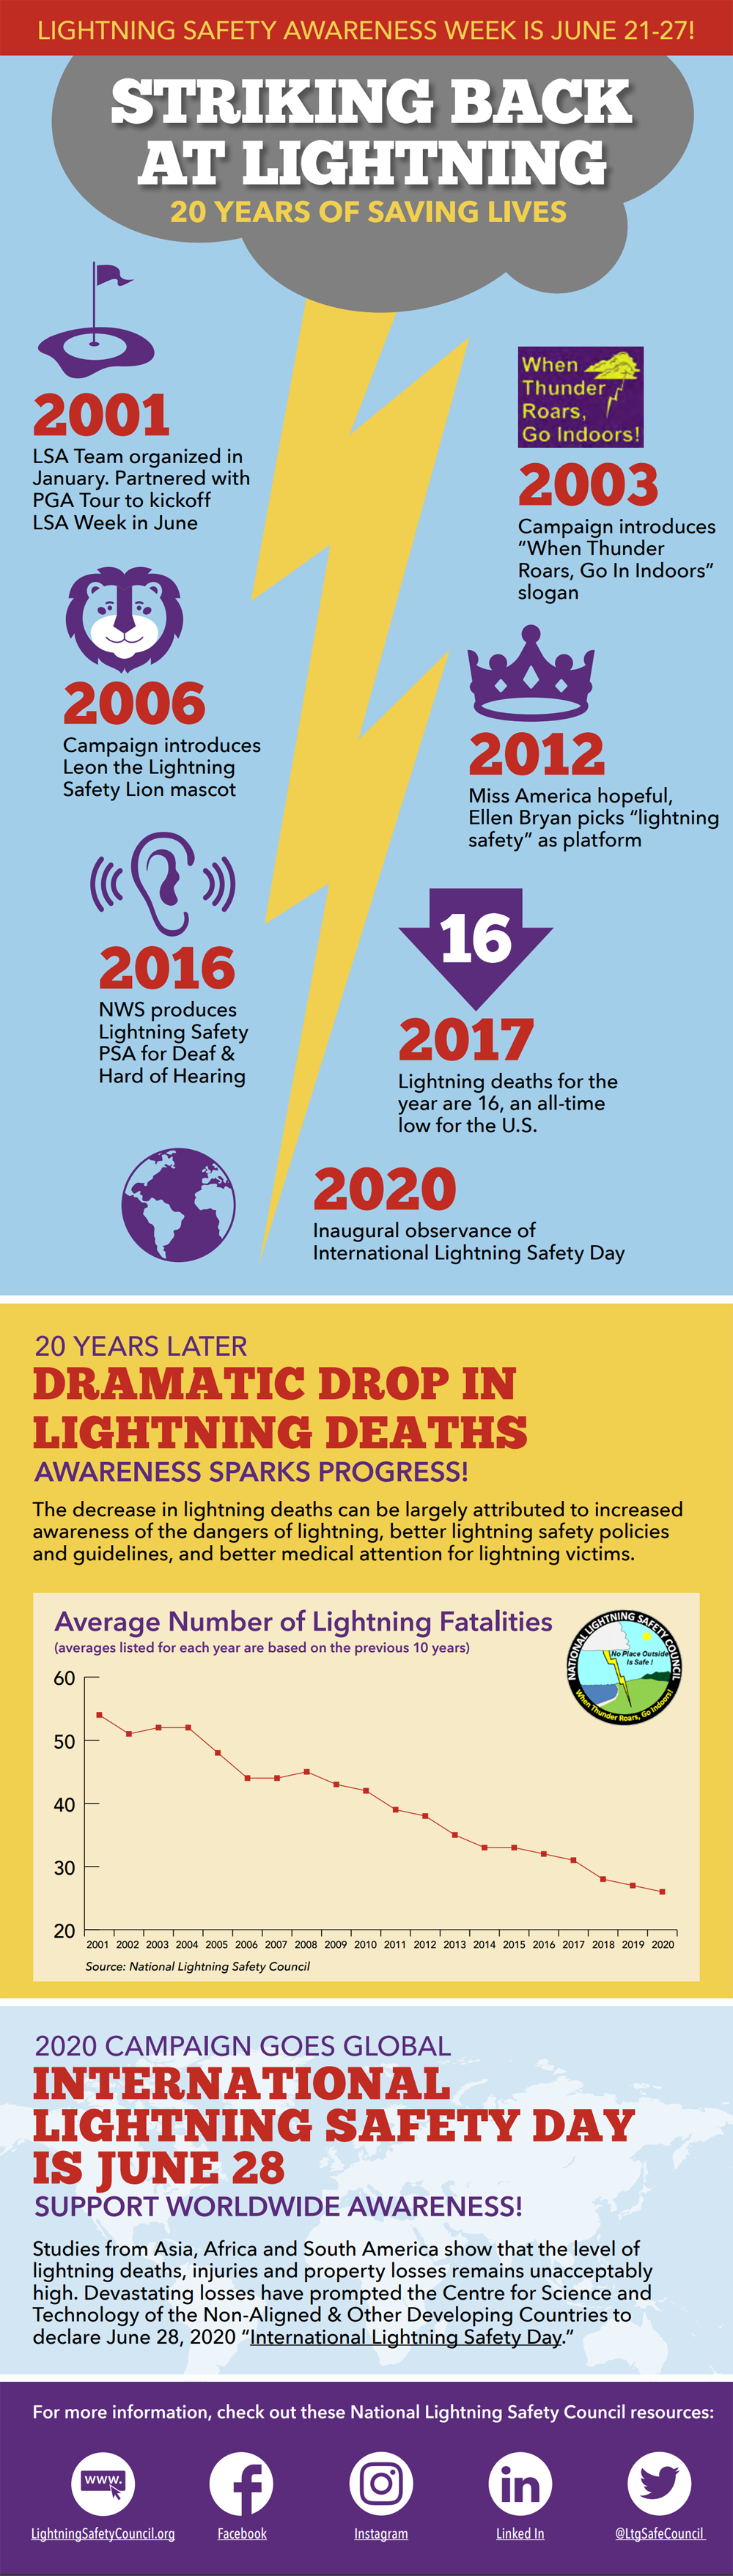 Striking Back at Lightning--20 Years of Saving Lives